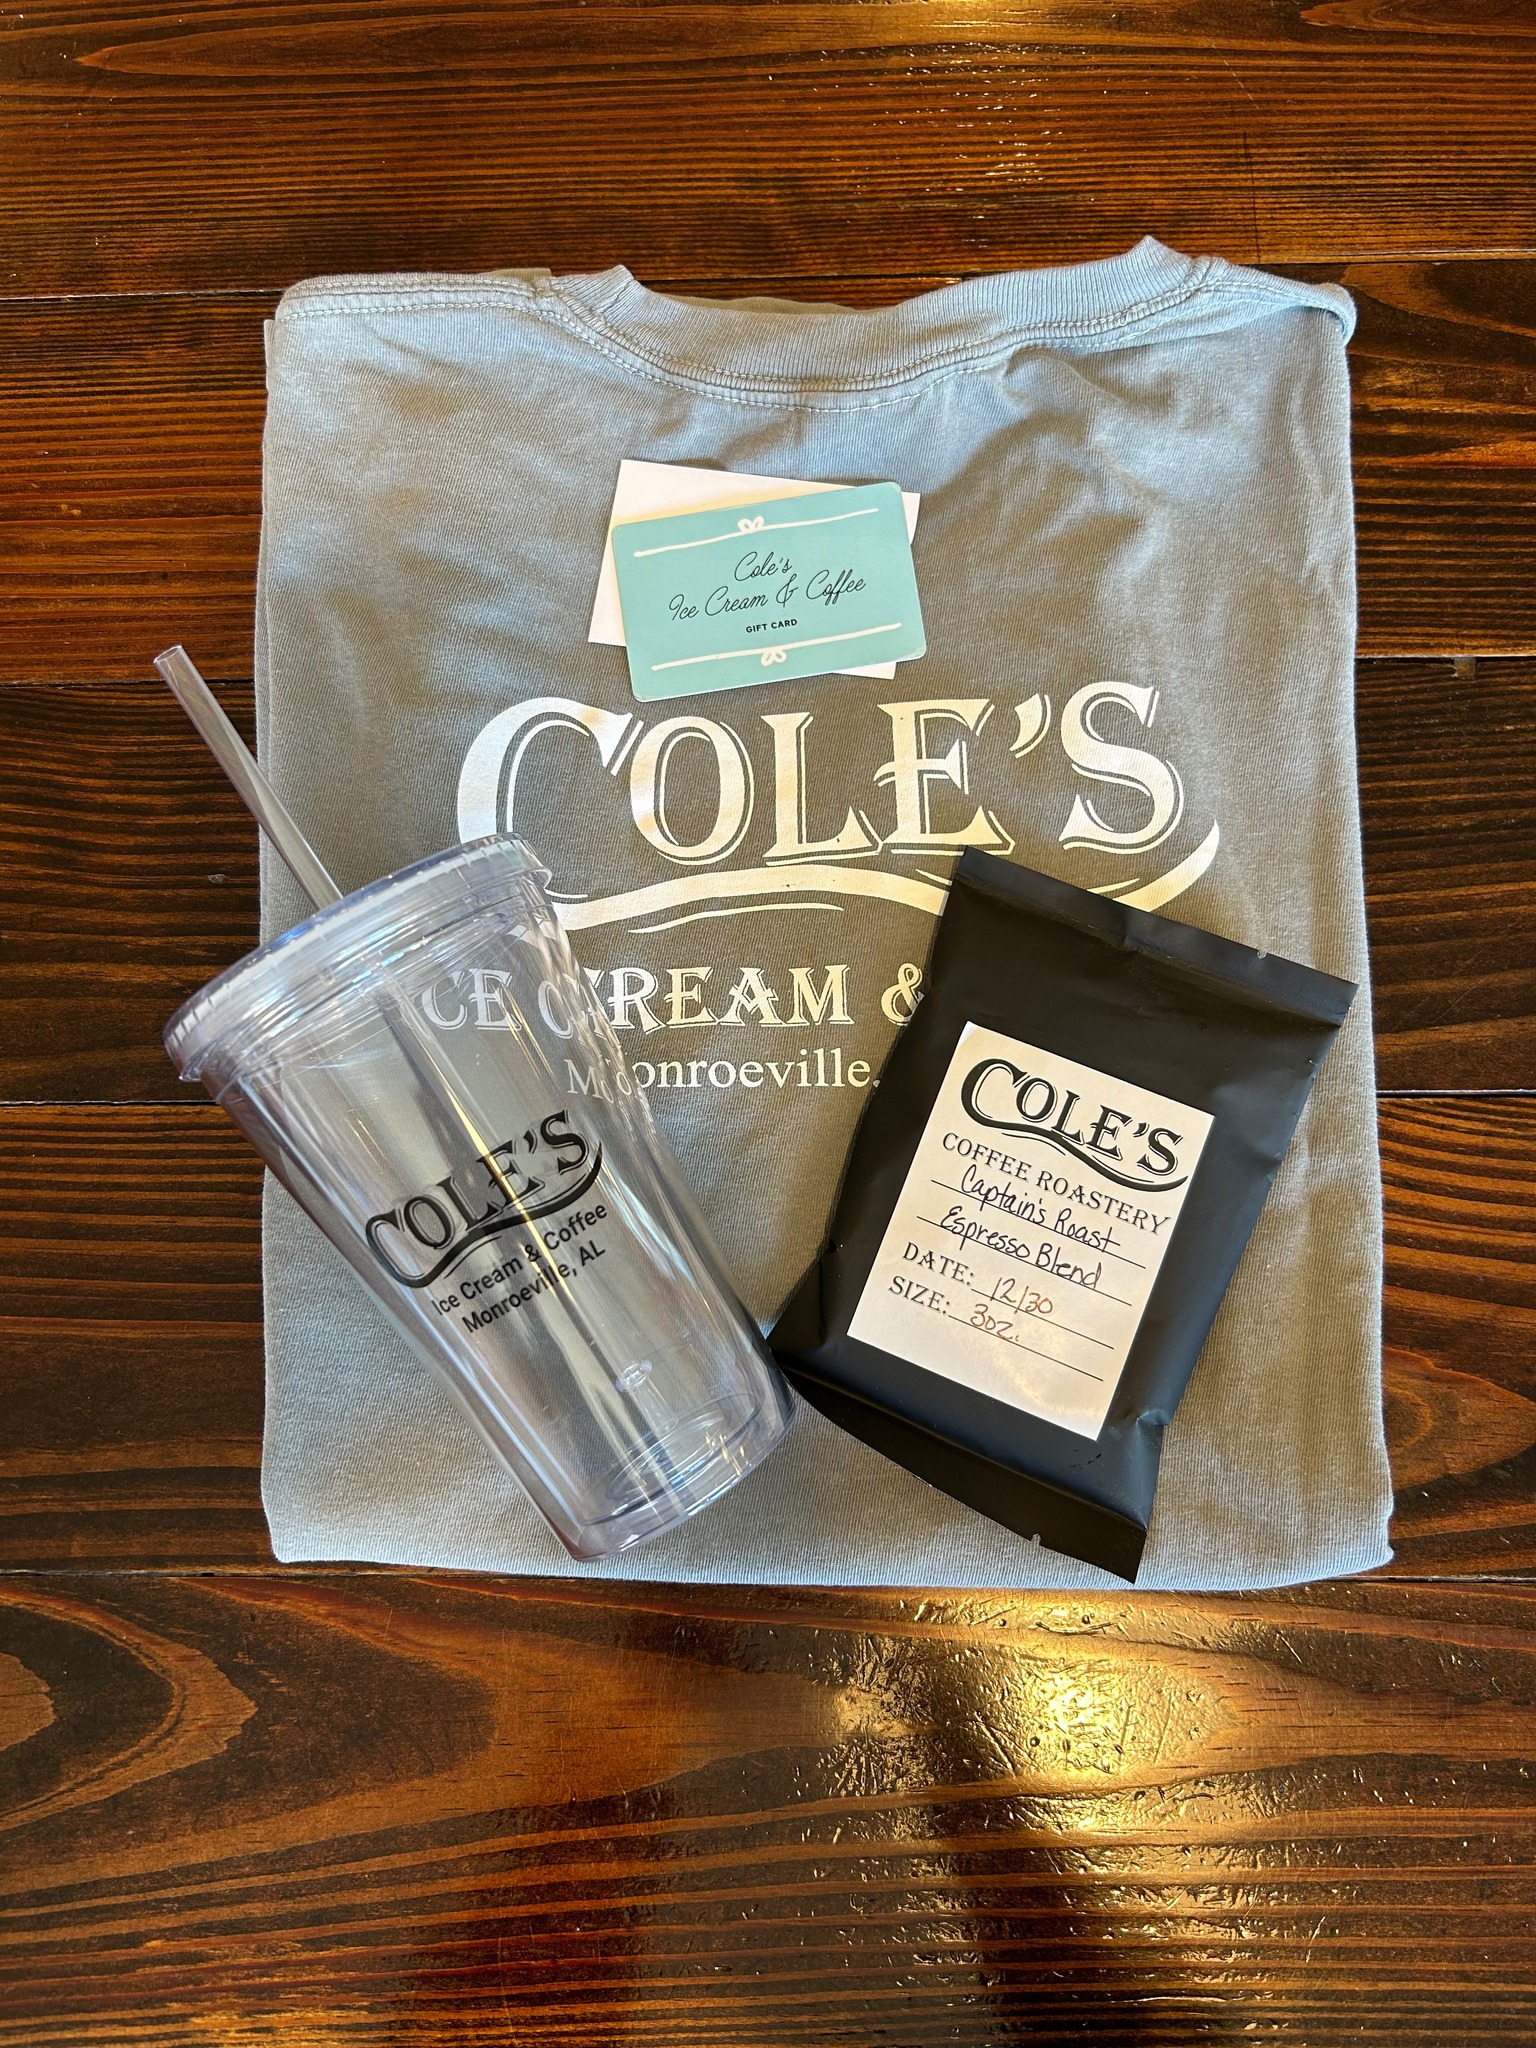 Cole's Ice Cream & Coffee